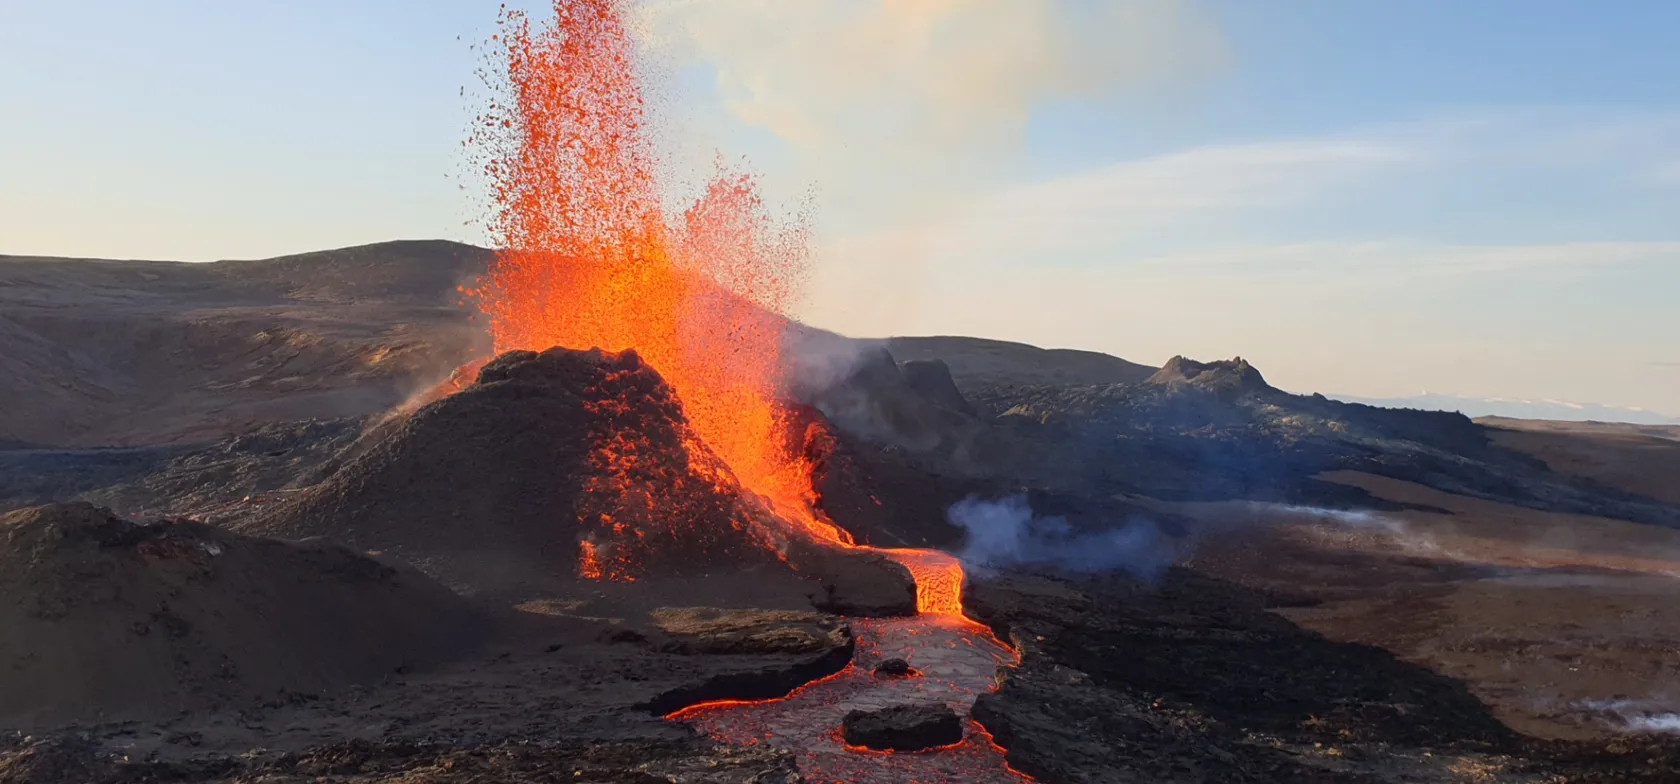 Lige nu har du en unik mulighed for at opleve et vulkanudbrud helt tæt på.